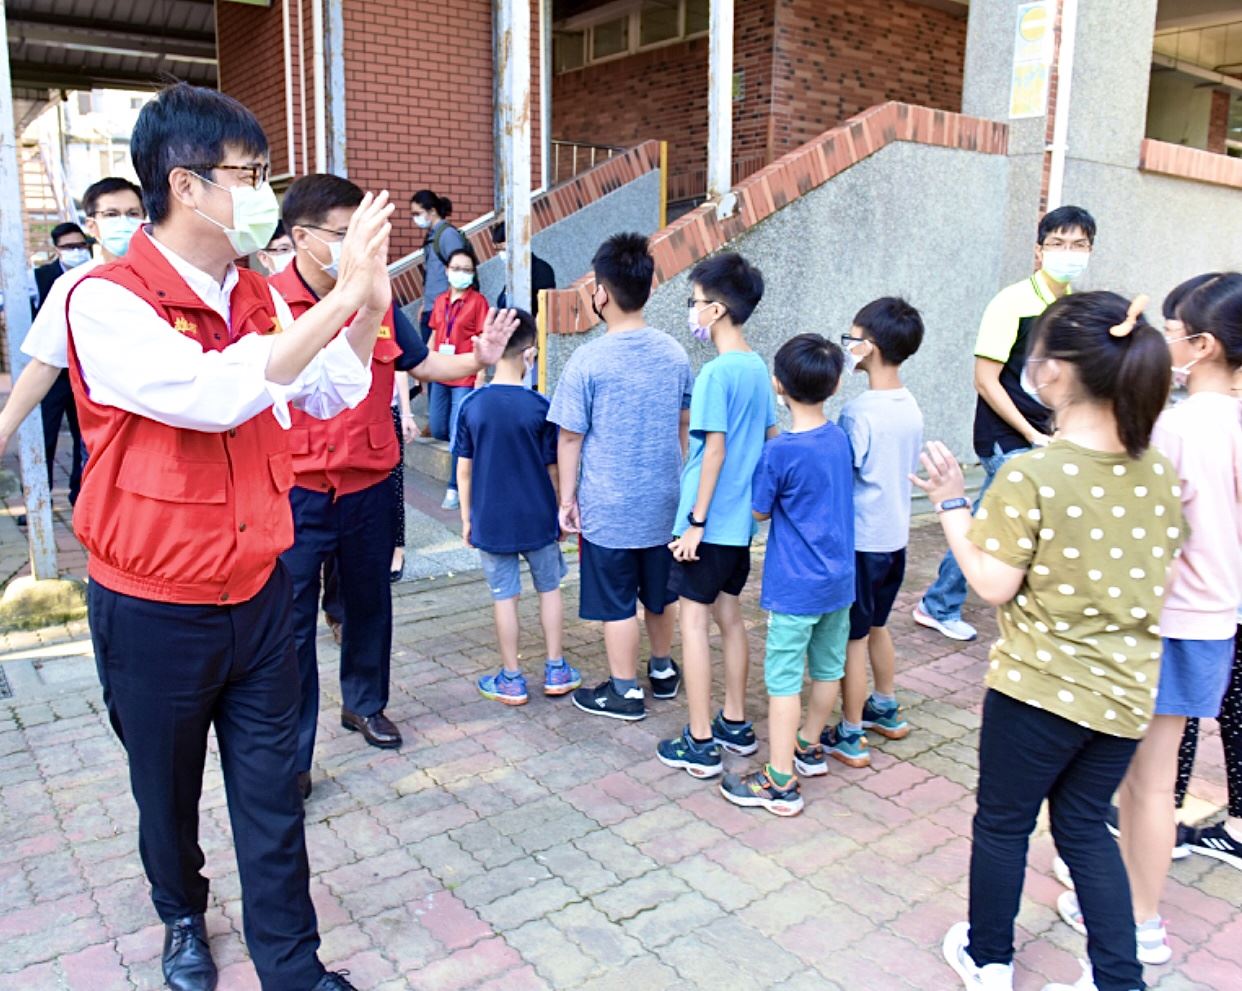 讓孩子健康安全迎開學 陳其邁提醒學校落實各項防疫